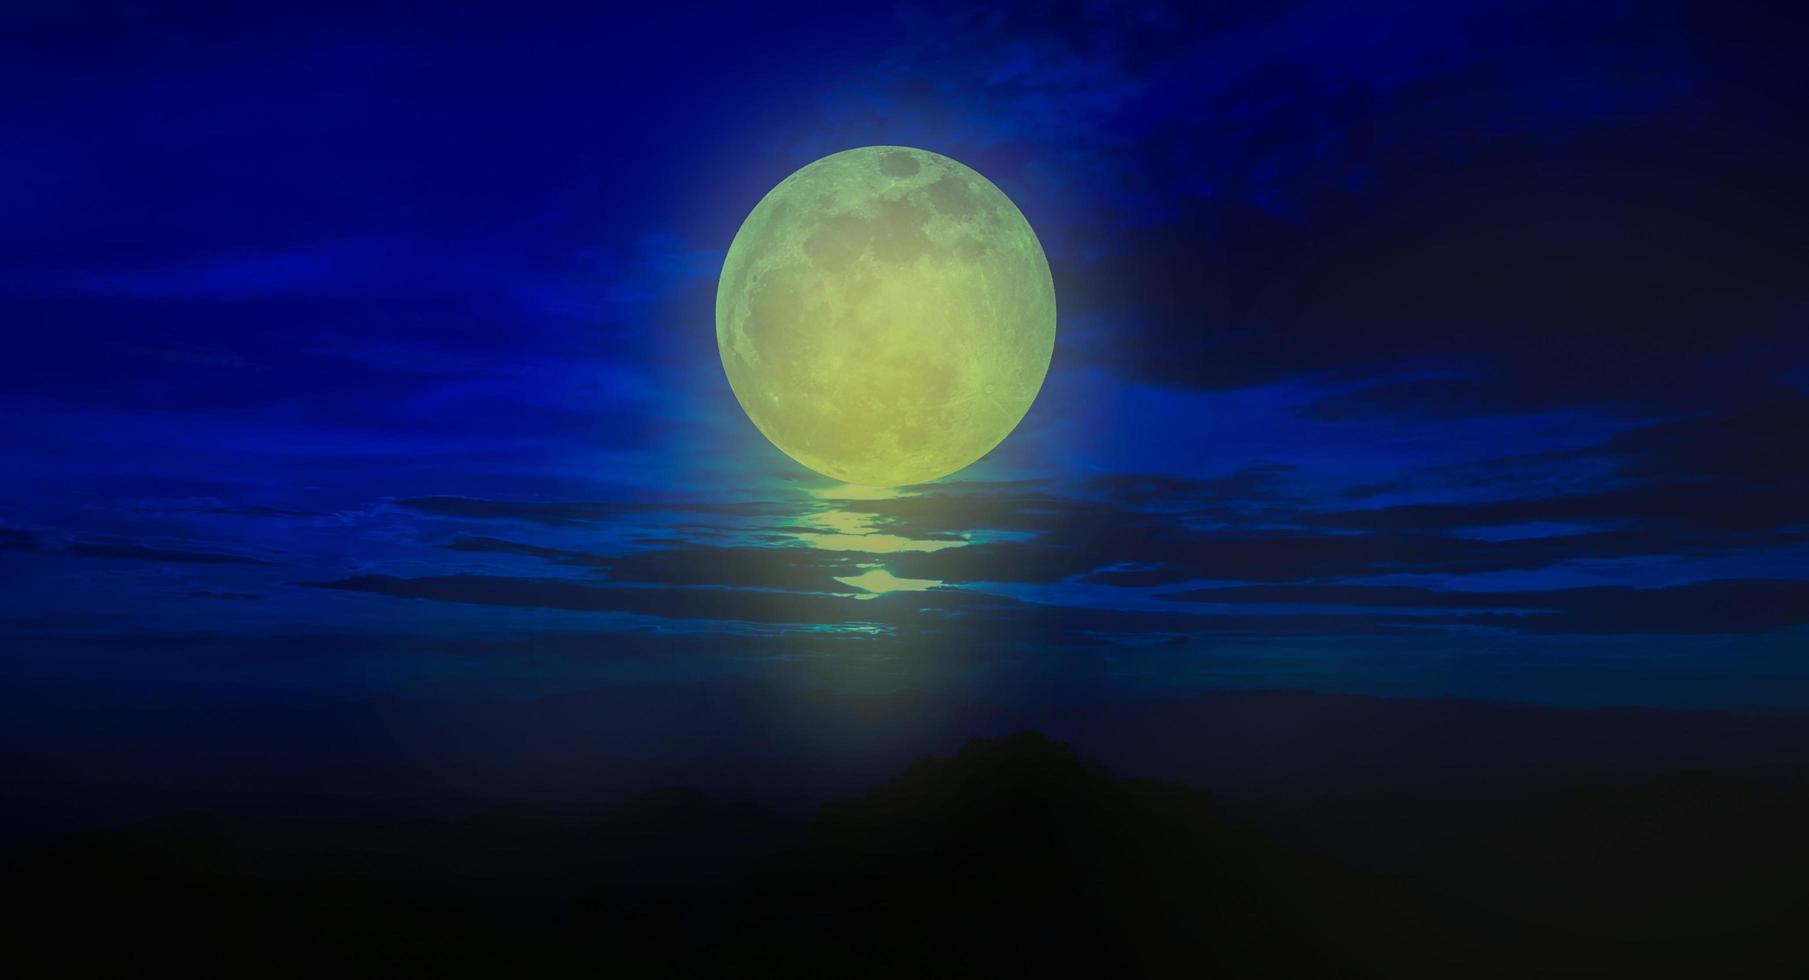 naturaleza noche luna llena sobre el mar foto